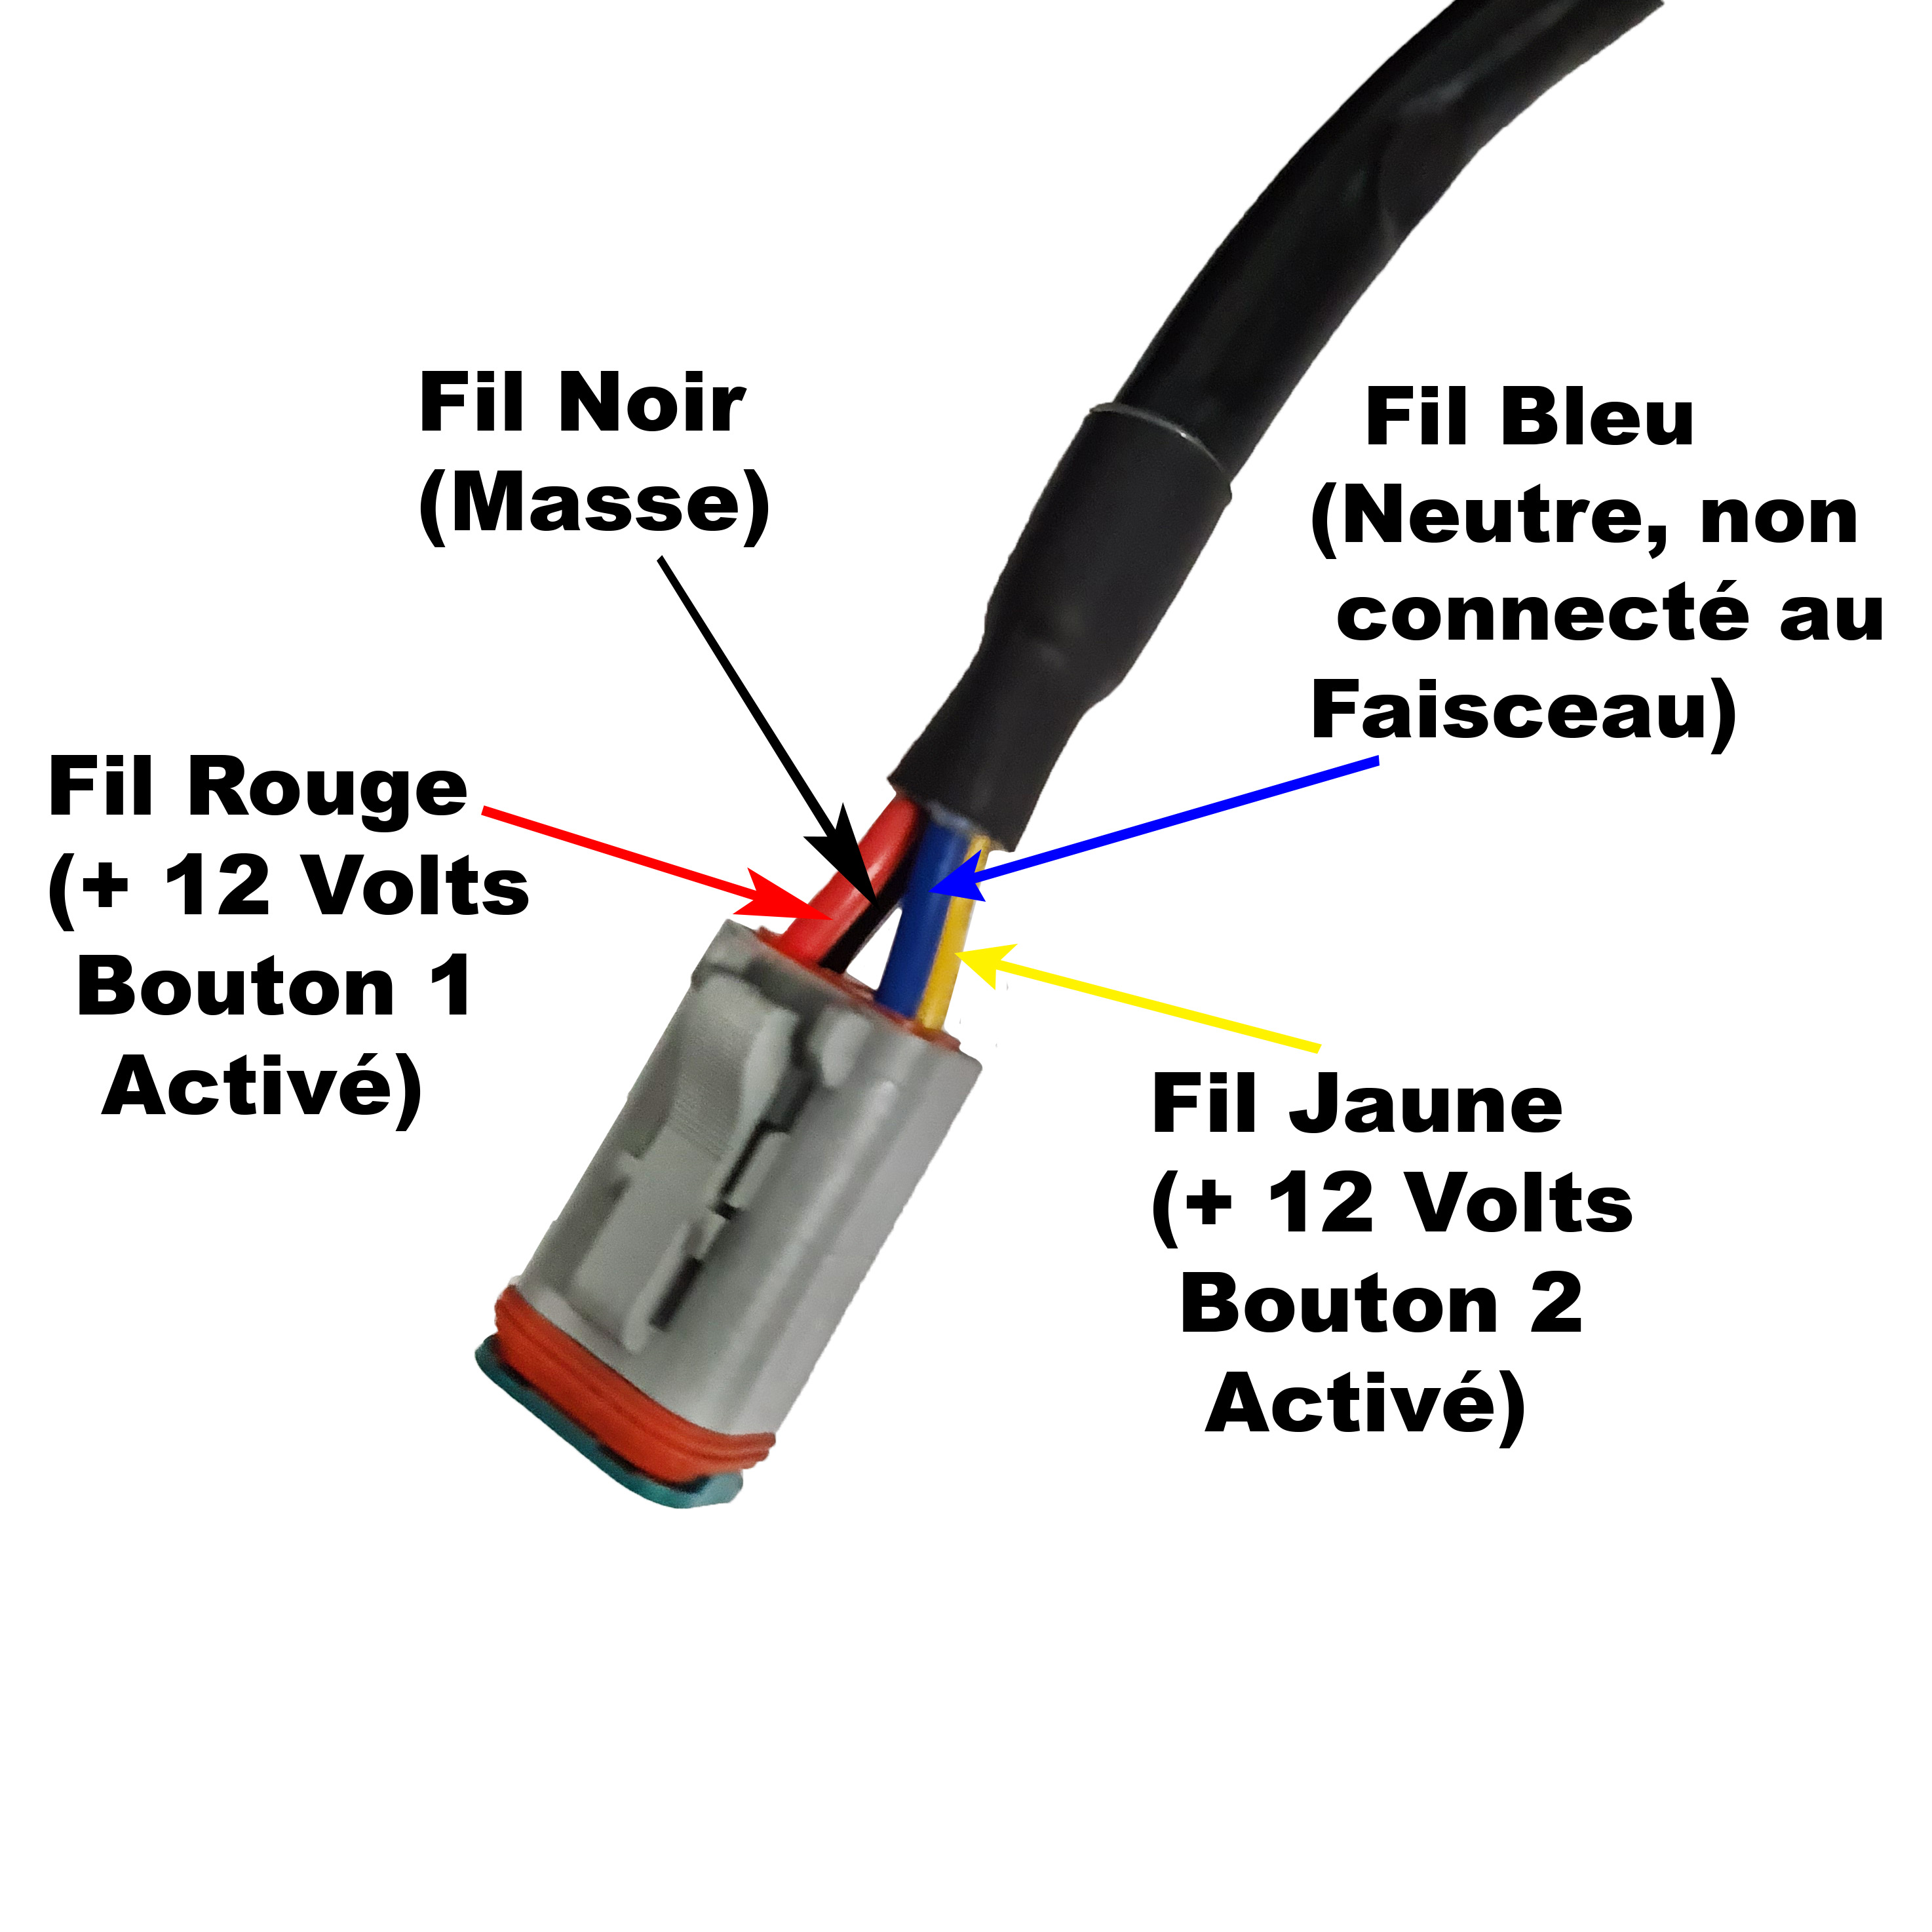 Faisceau Electrique relais pour Barre LED - 2 voies DT - Interrupteur  2D163C - Connecteurs DT et interrupteur fournis - France-Xenon